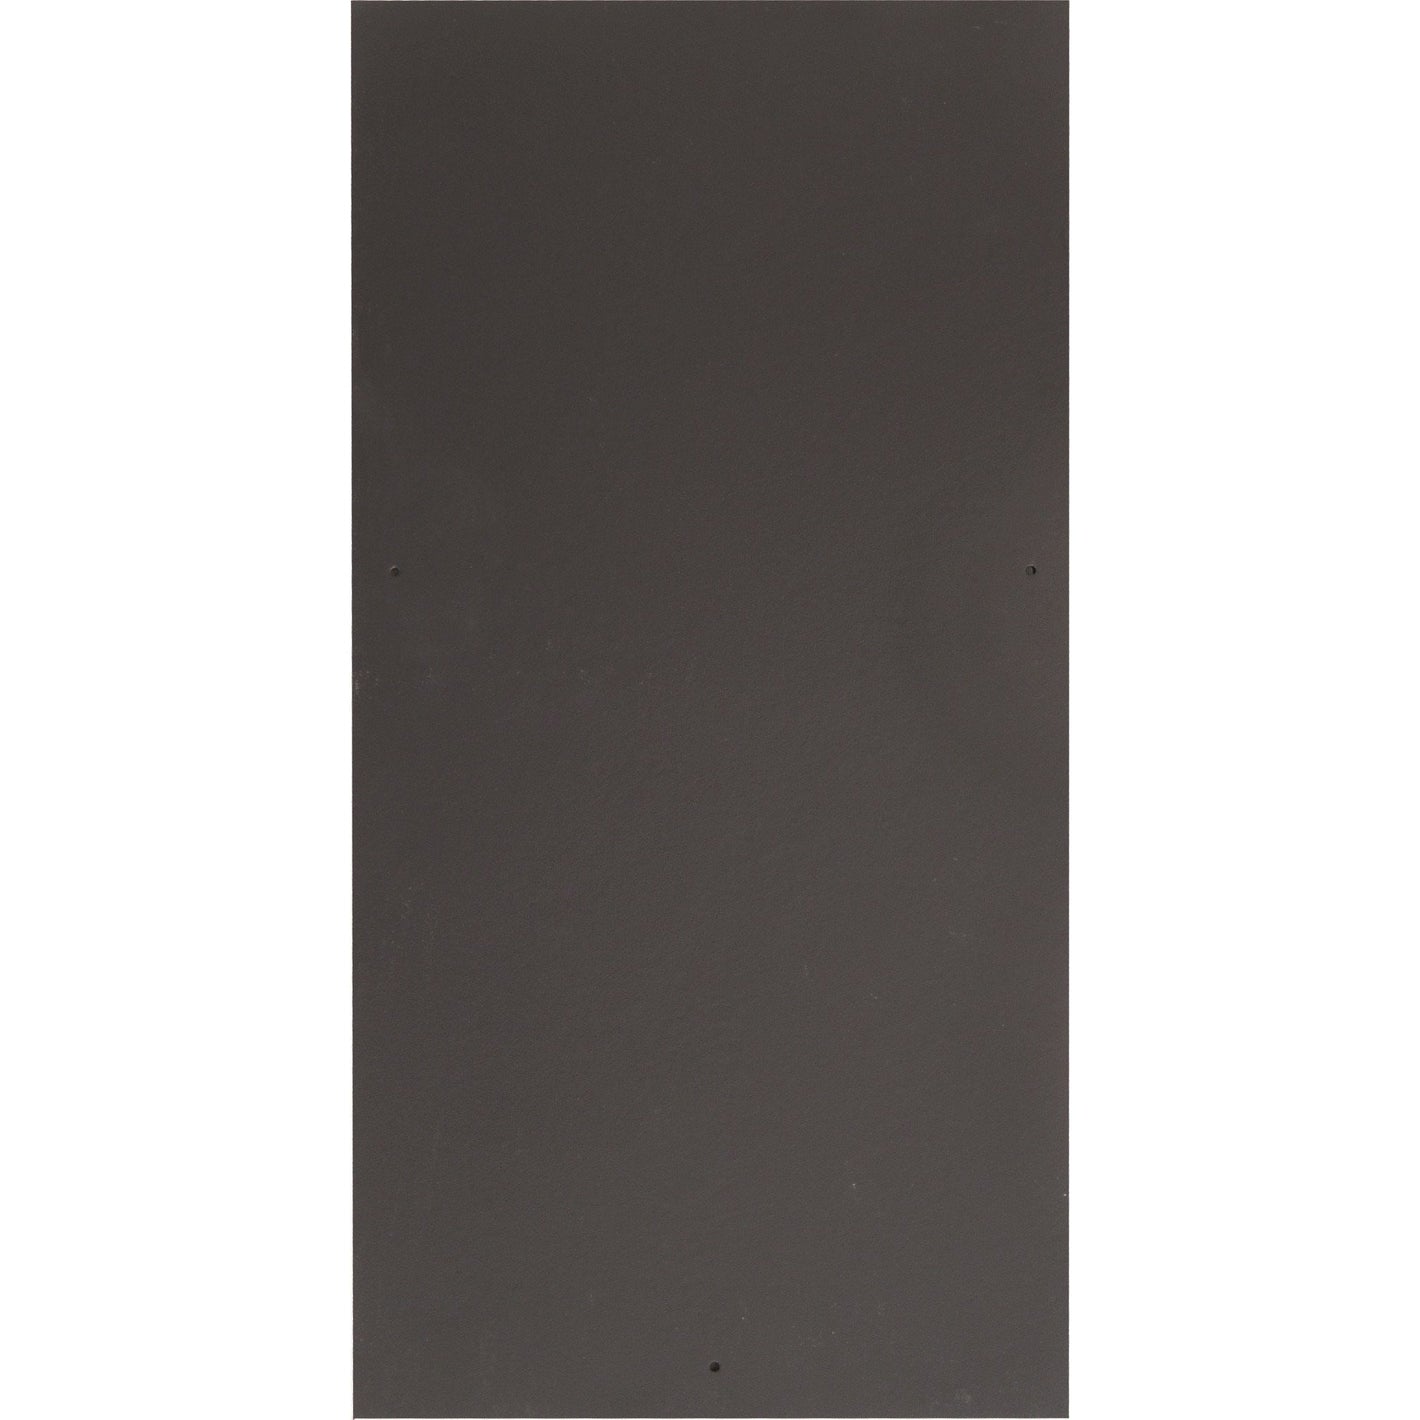 Cedral Birkdale Slate 600 x 300mm - Blue / Black